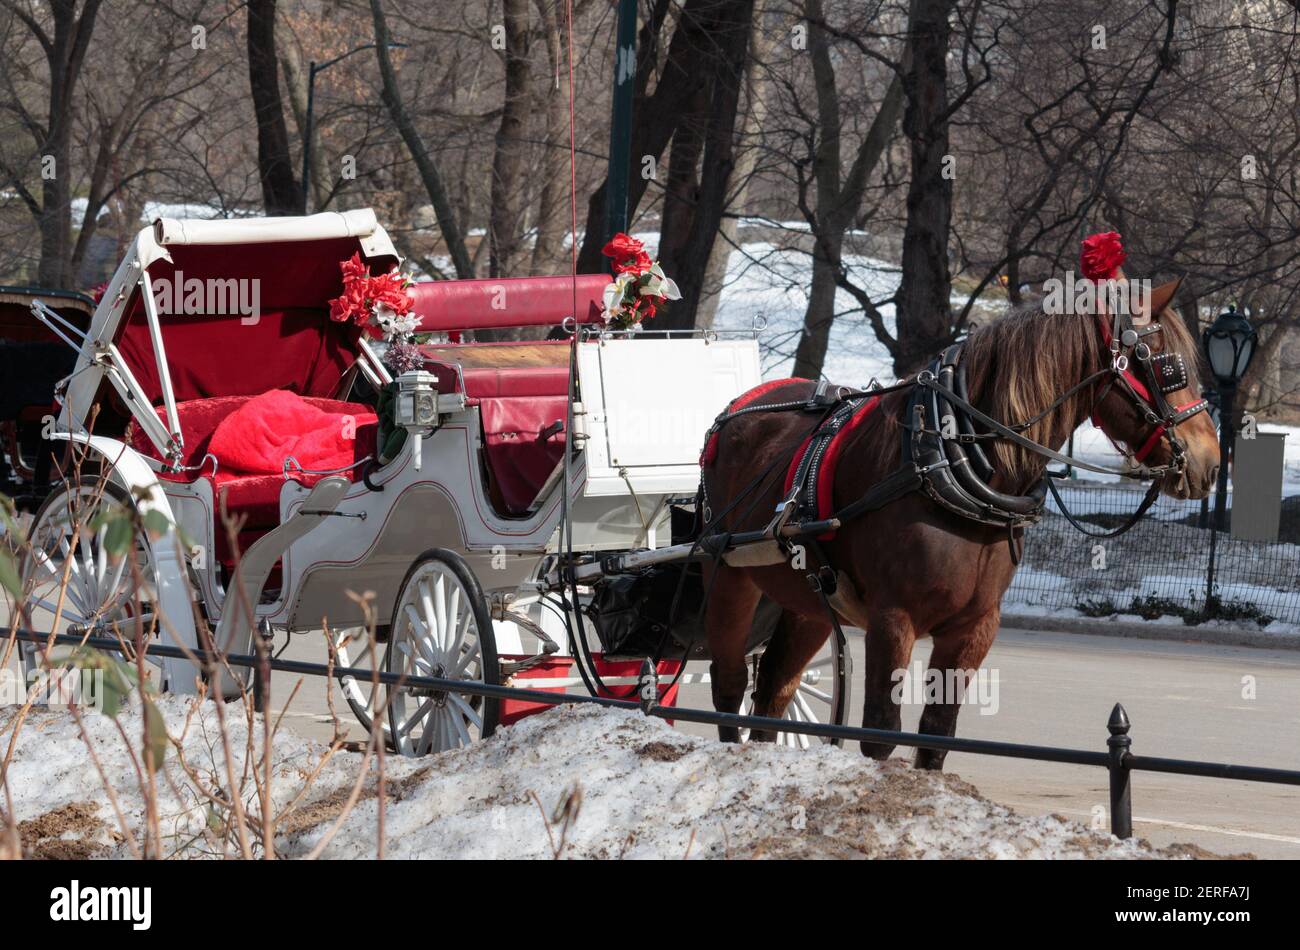 Central Park carrozza cavallo vestito in un headdress rosso e. agganciato a un carrello attende vuoto in attesa di un cliente In inverno con neve a terra Foto Stock